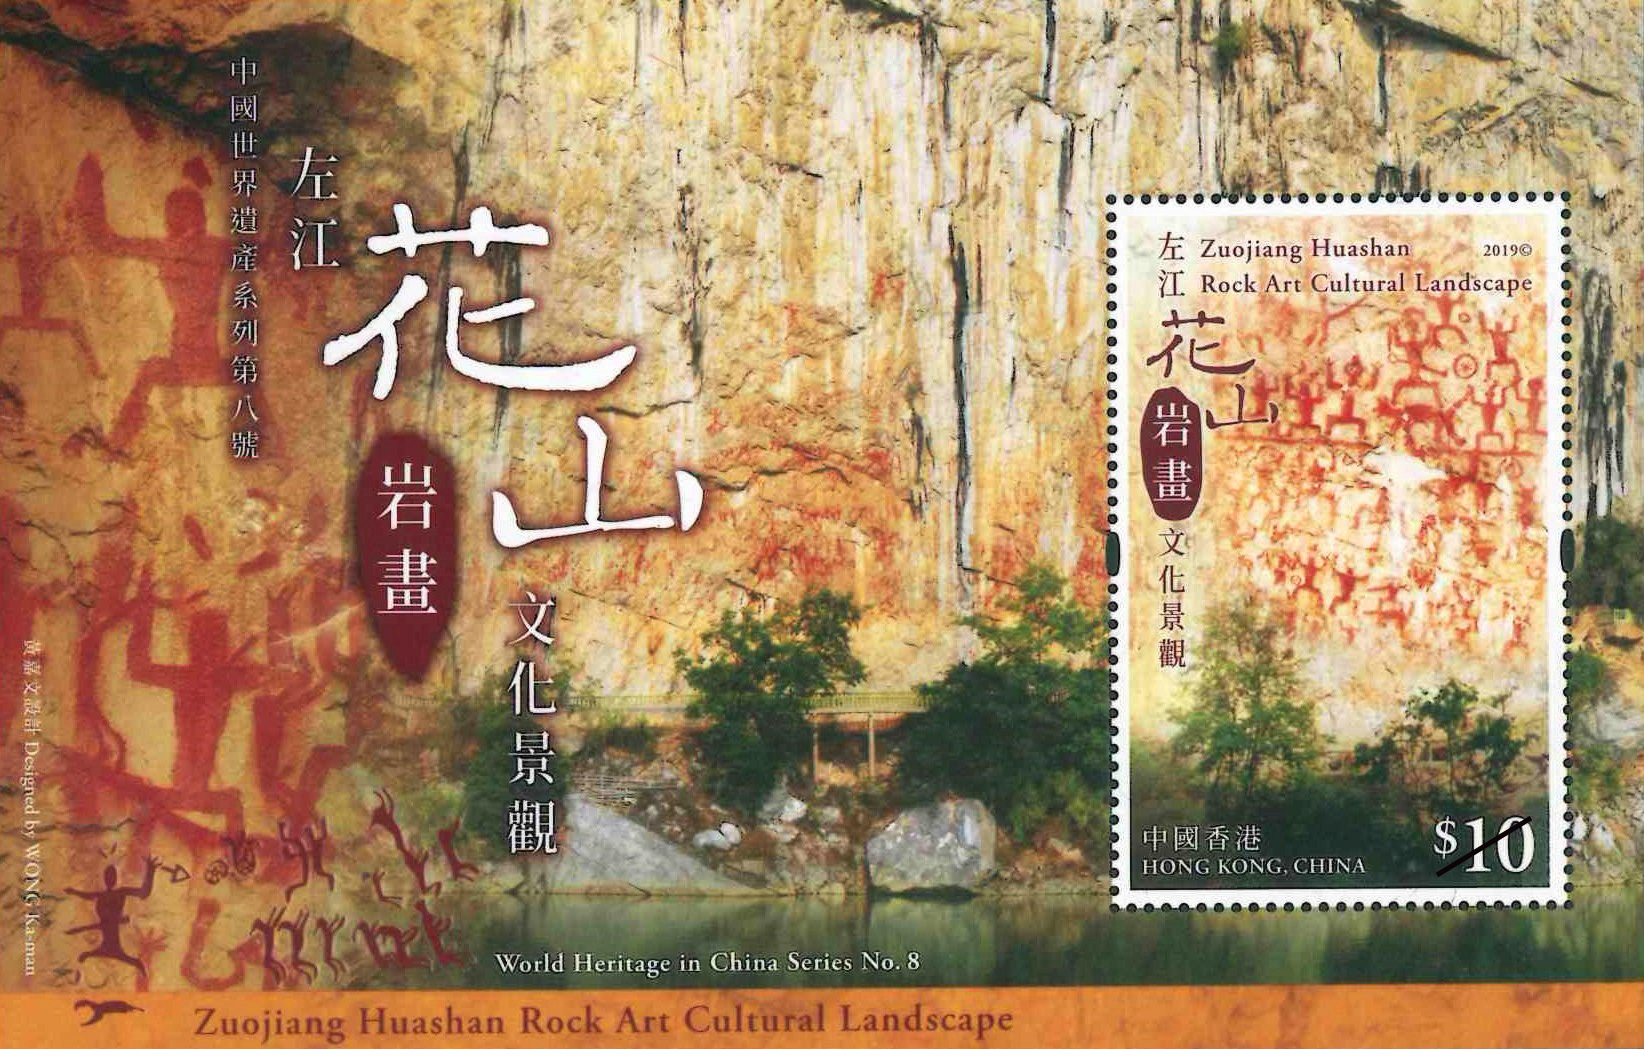 「中國世界遺產系列第八號：左江花山岩畫文化景觀」特別郵票